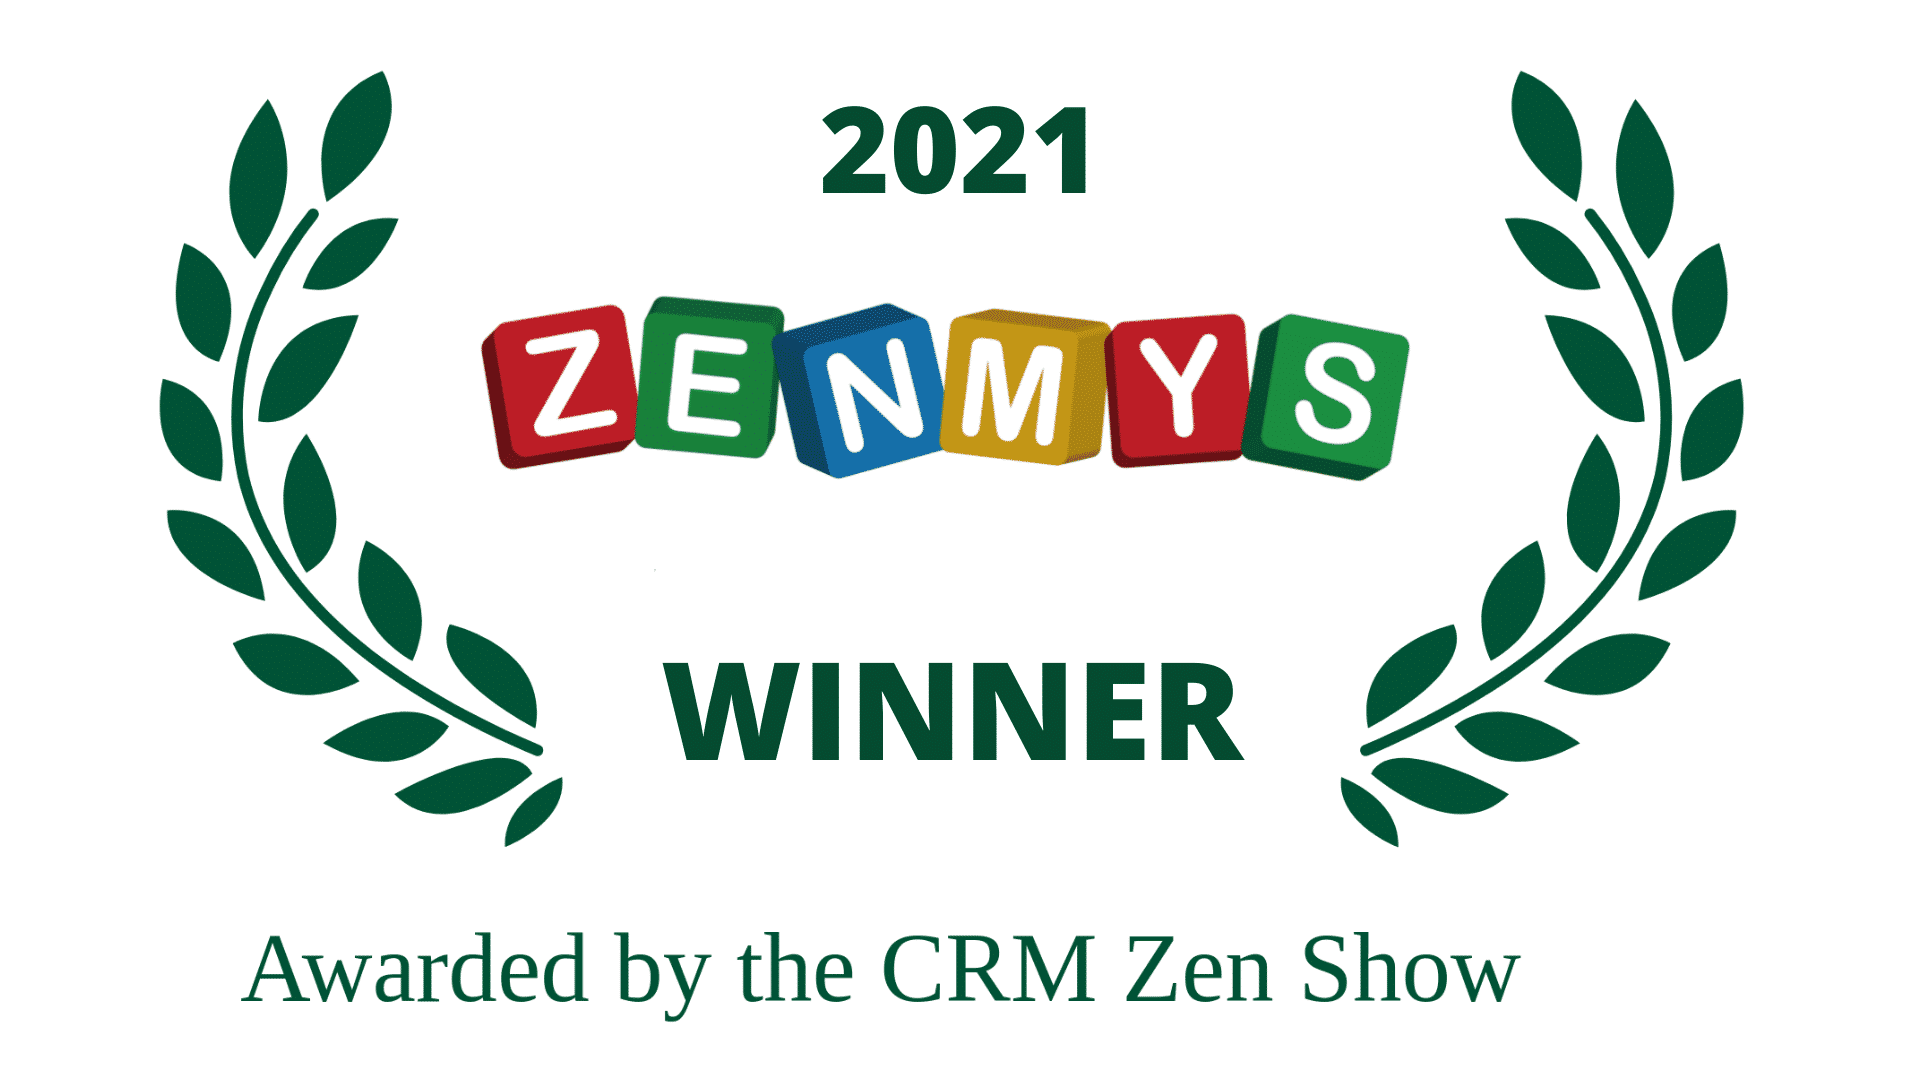 2021 zenmys winner awarded by the CRM Zen Show